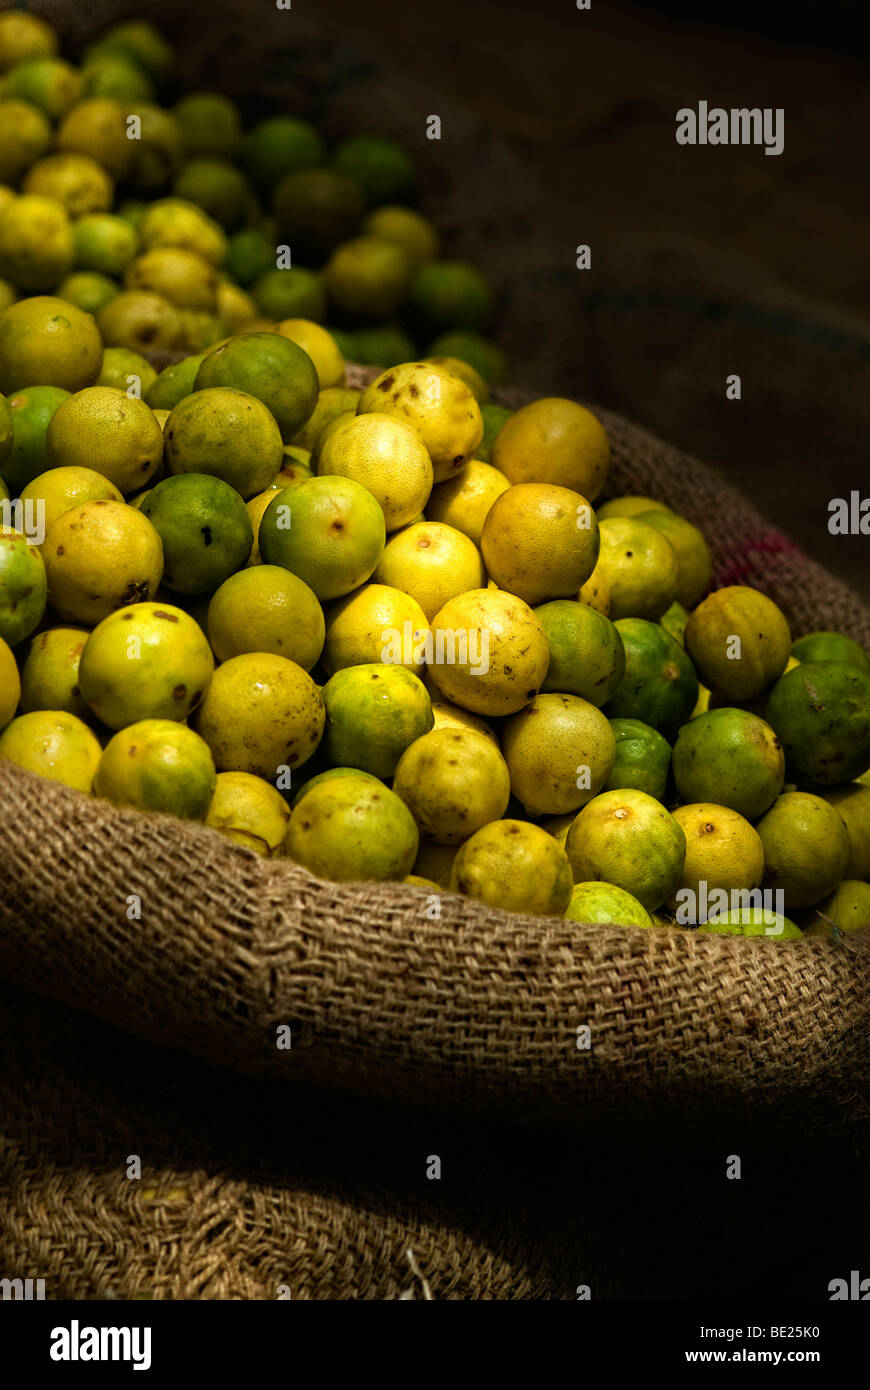 Zitrone Limette Obst im Sonnenlicht und Schatten in Sackleinen Säcke Stockfoto